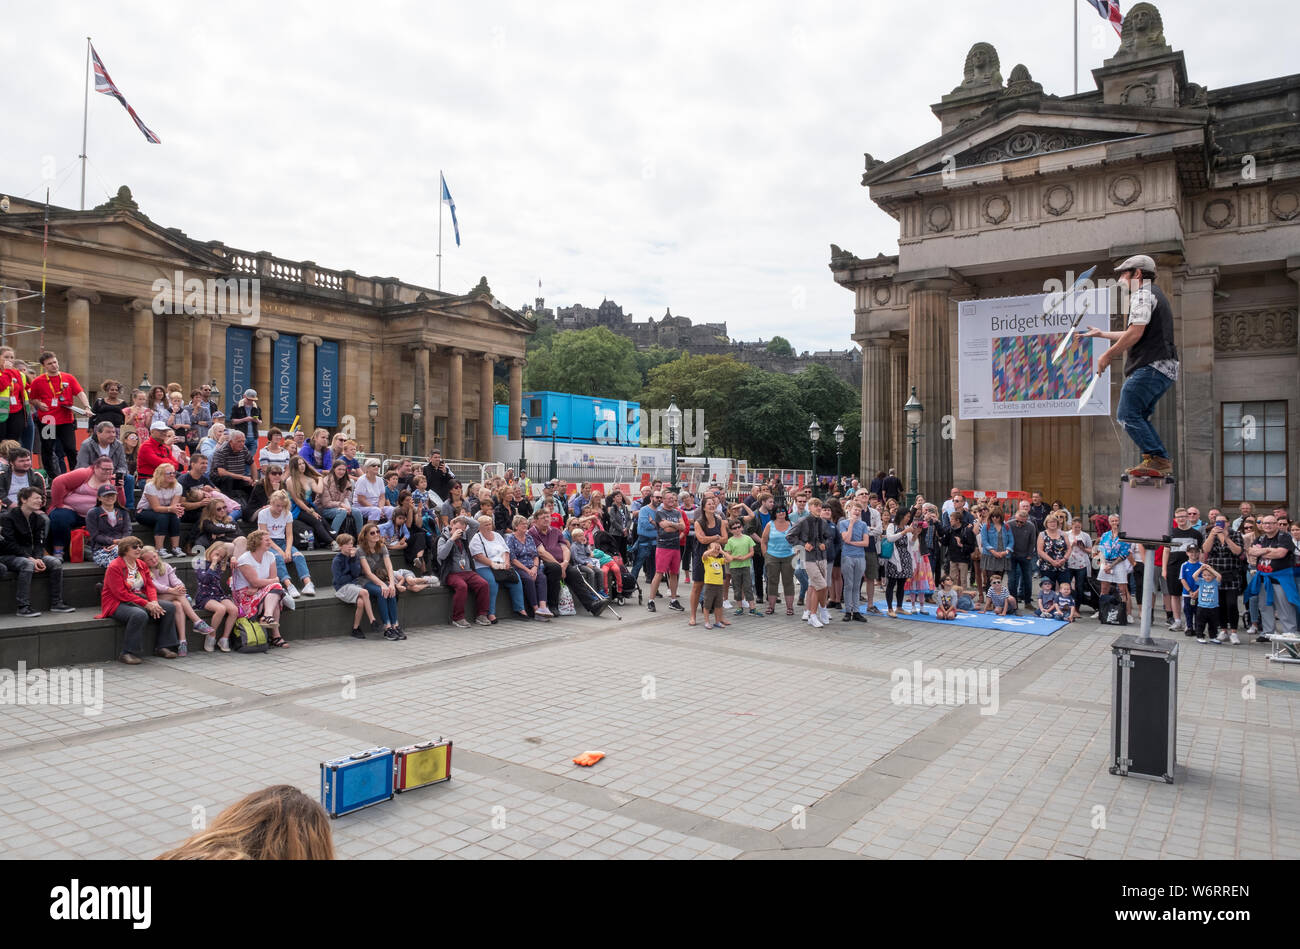 Un artiste de rue divertit la foule sur le Mound à Édimbourg, partie du Festival Fringe d'Édimbourg, le plus grand festival d'art au monde. Banque D'Images